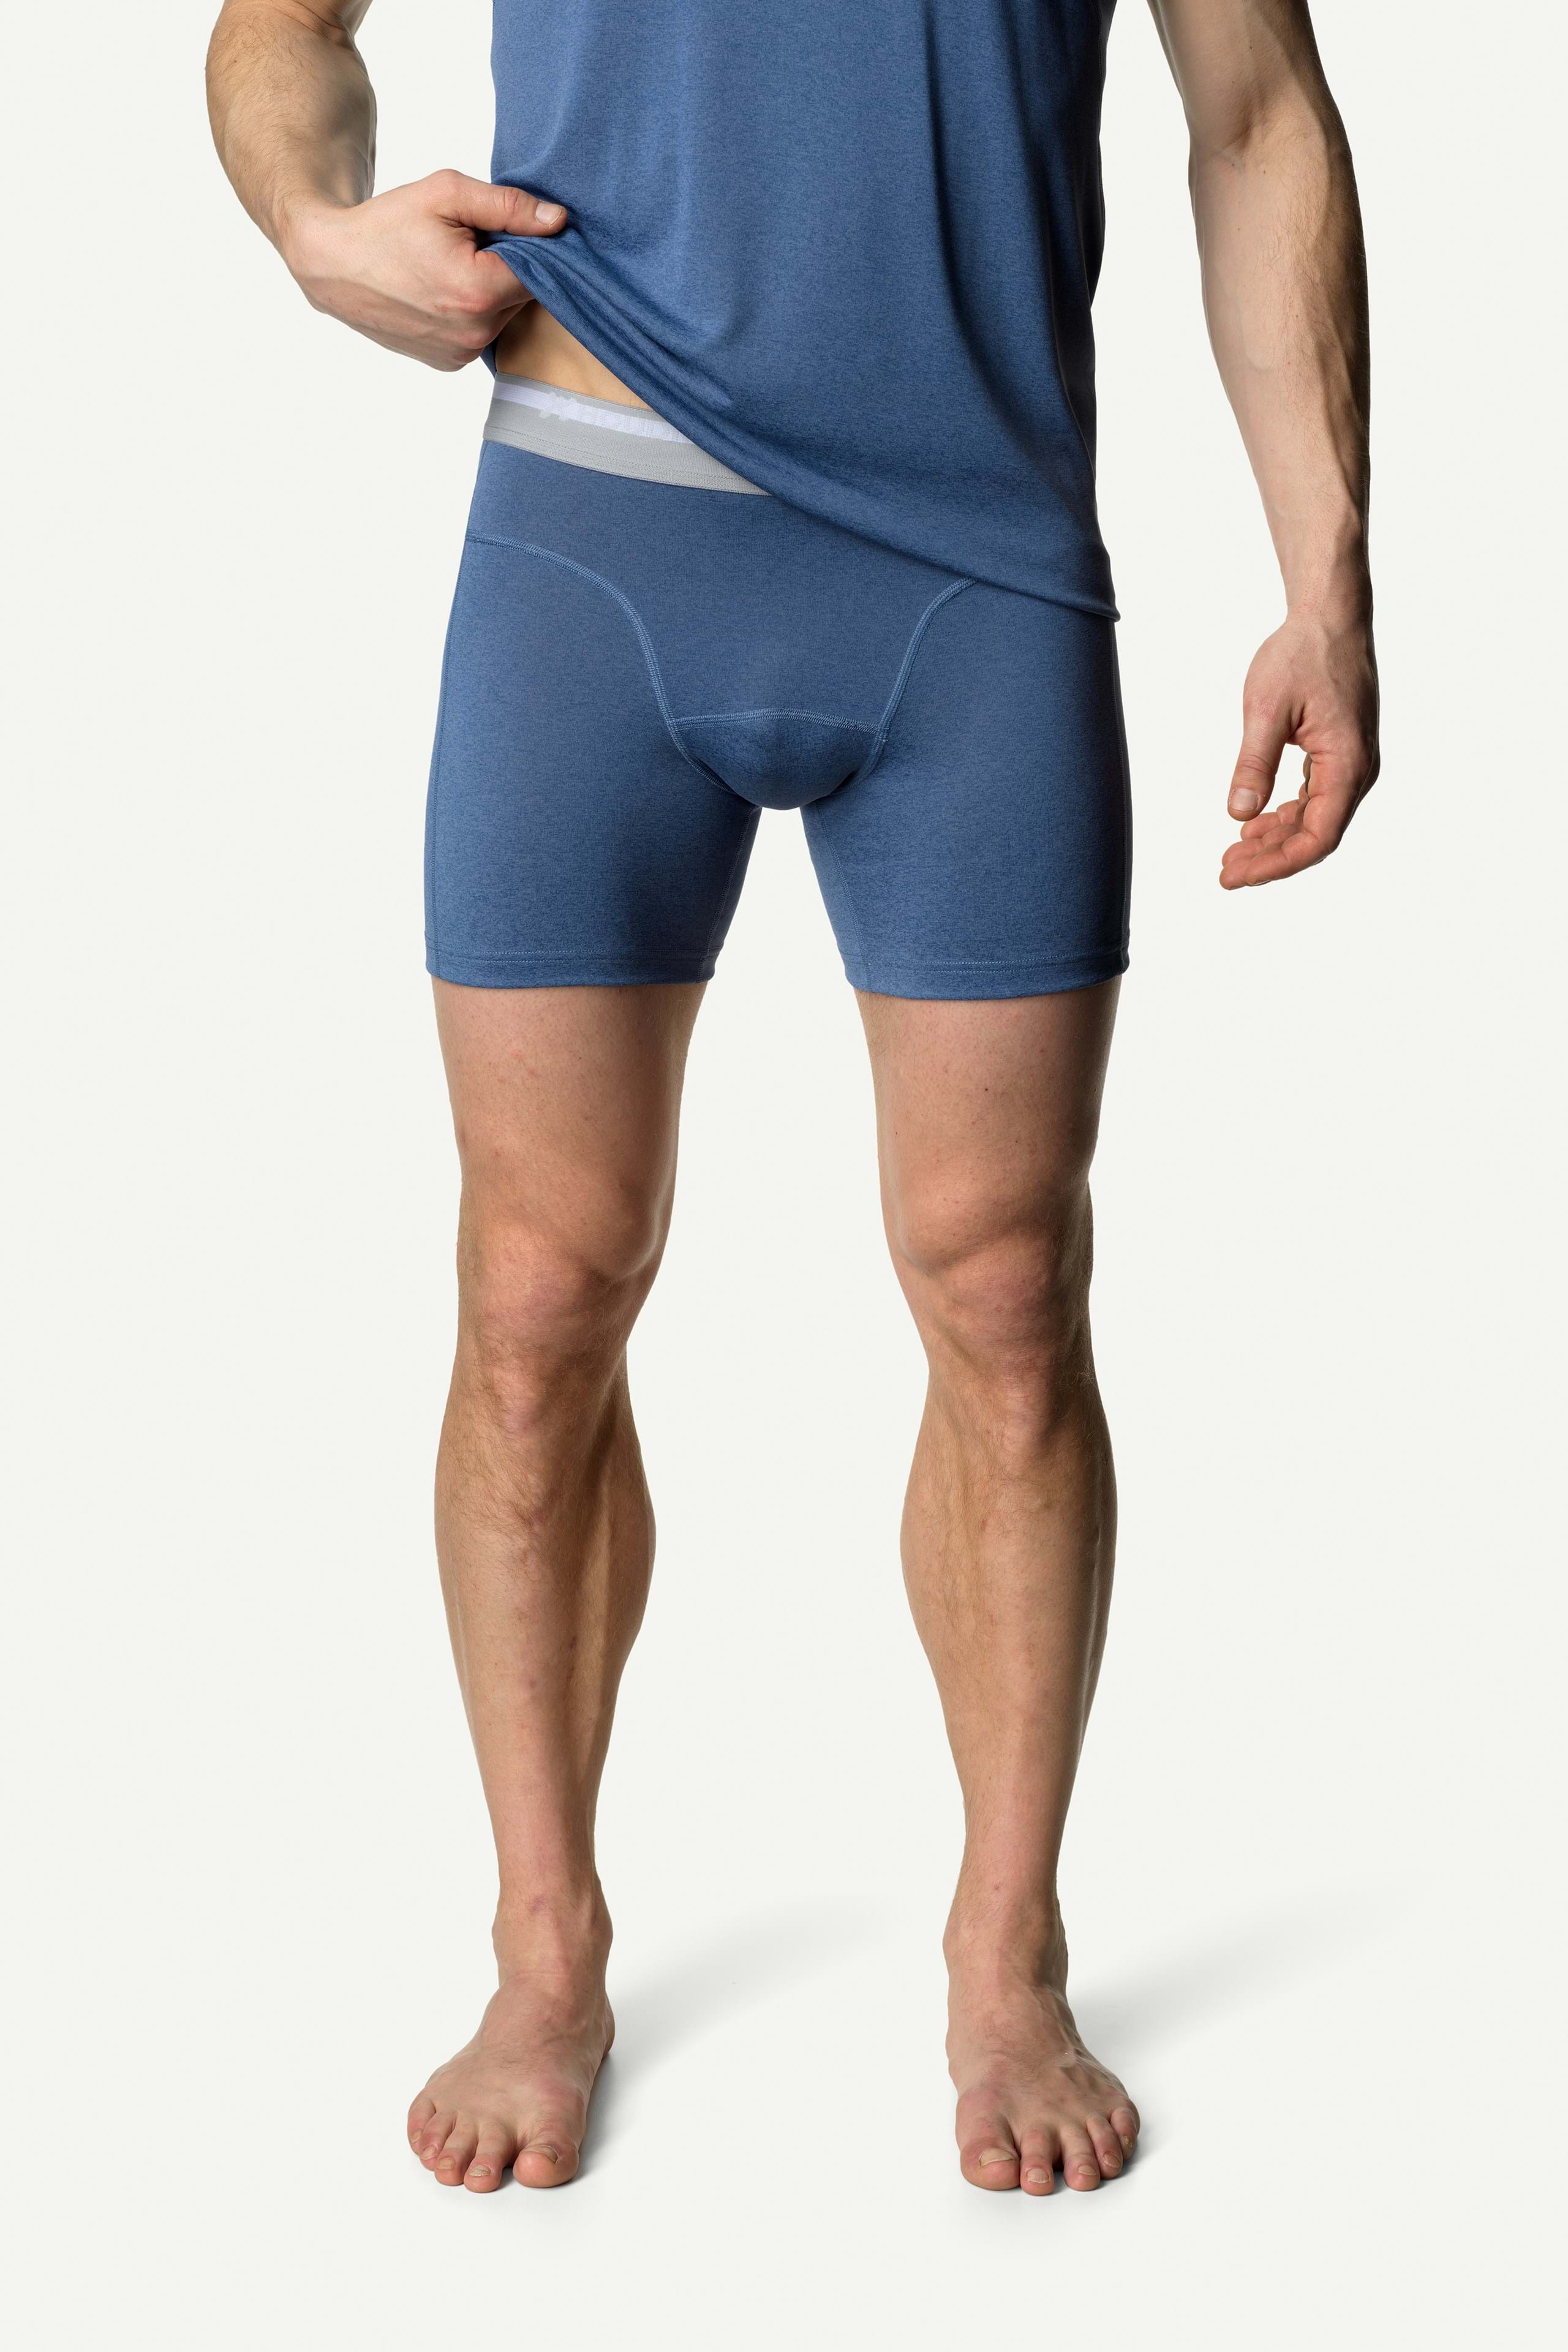 Underwear of the Week – N2N Sheer Mesh Pouch Boxer – Underwear